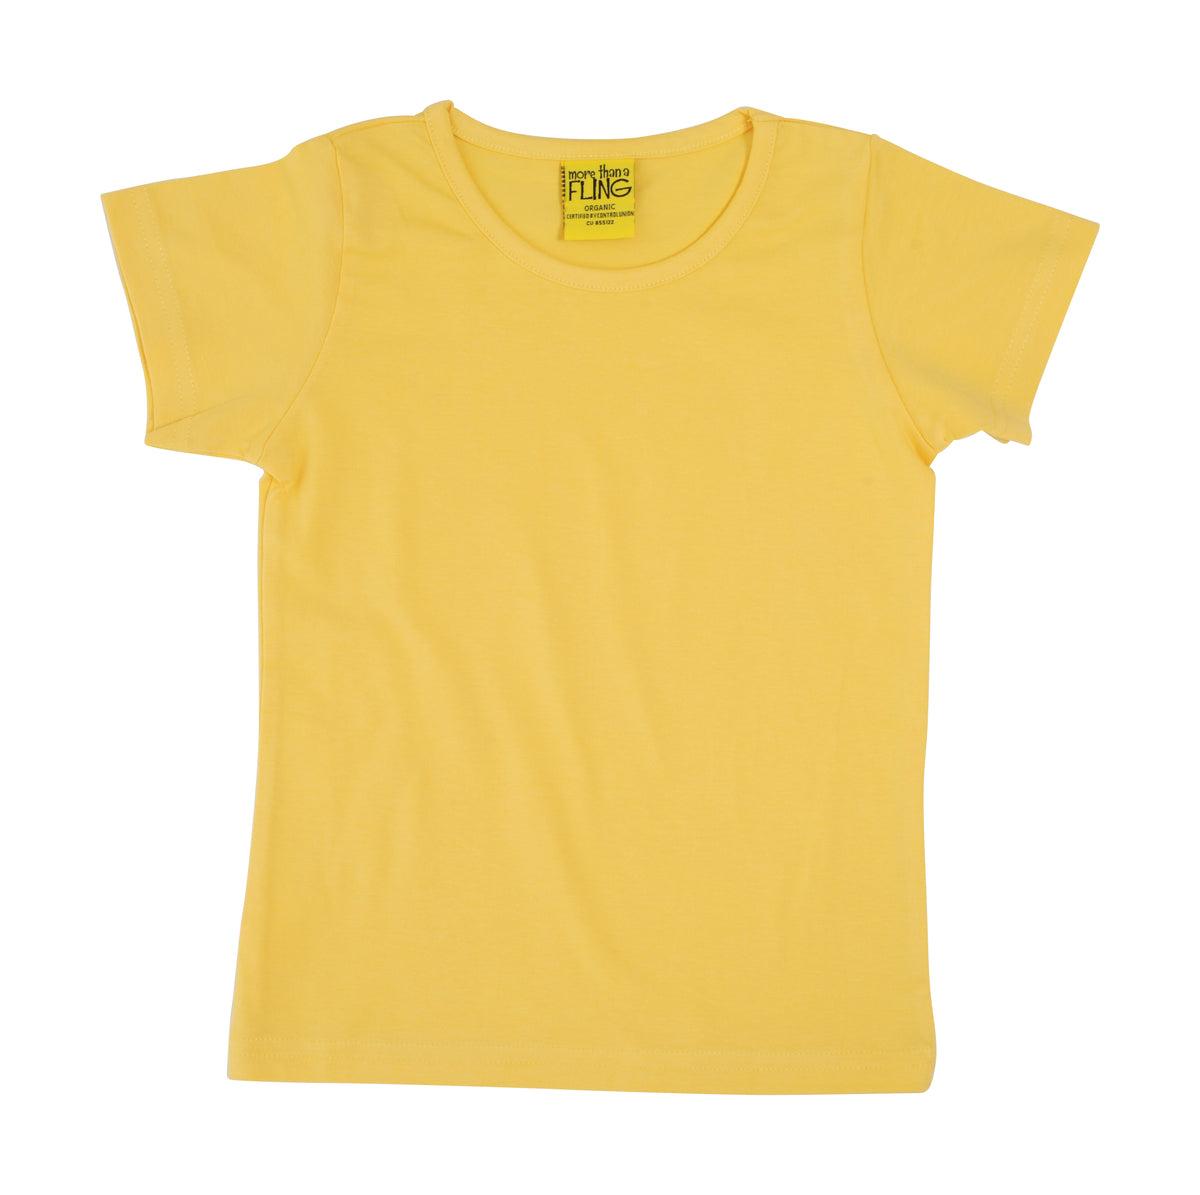 More Than A Fling T-Shirt Banana Yellow - Zacht Geel